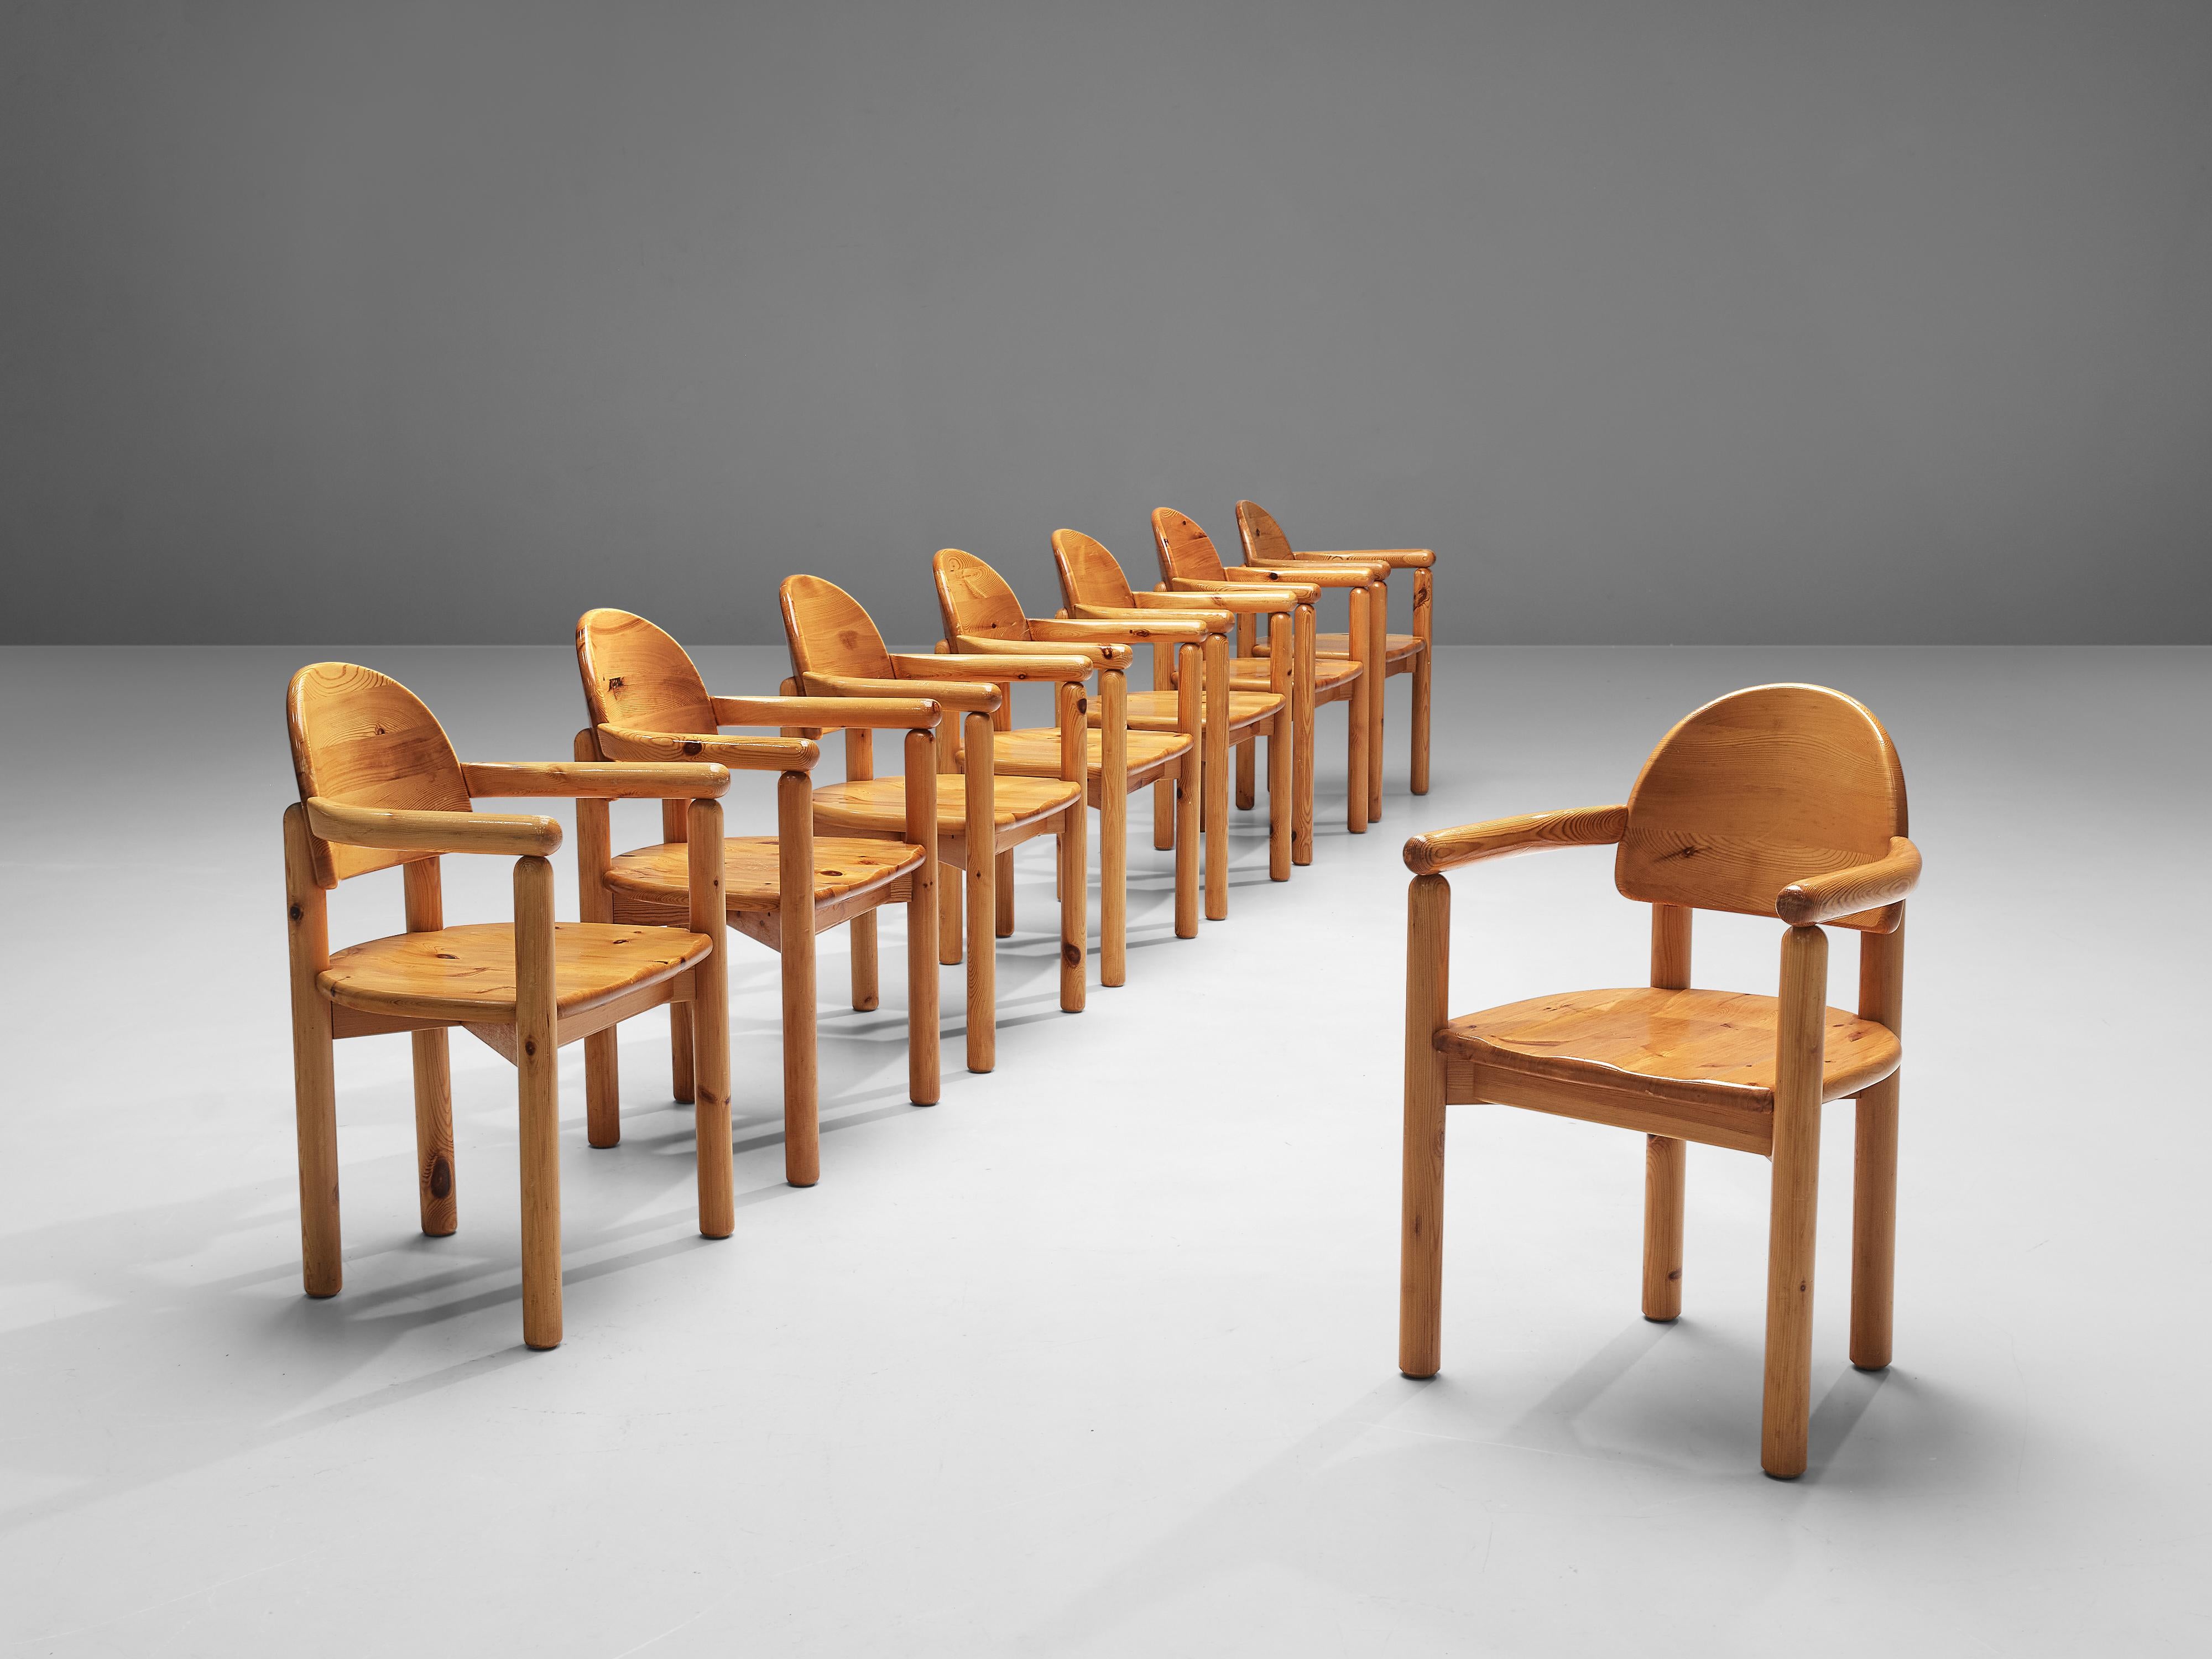 Rainer Daumiller pour Hirtshals Savvaerk, ensemble de huit fauteuils, pin, Danemark, années 1970
 
Ces chaises de salle à manger du designer danois Rainer Daumiller présentent de multiples caractéristiques magnifiques. Le grain vif du bois de pin